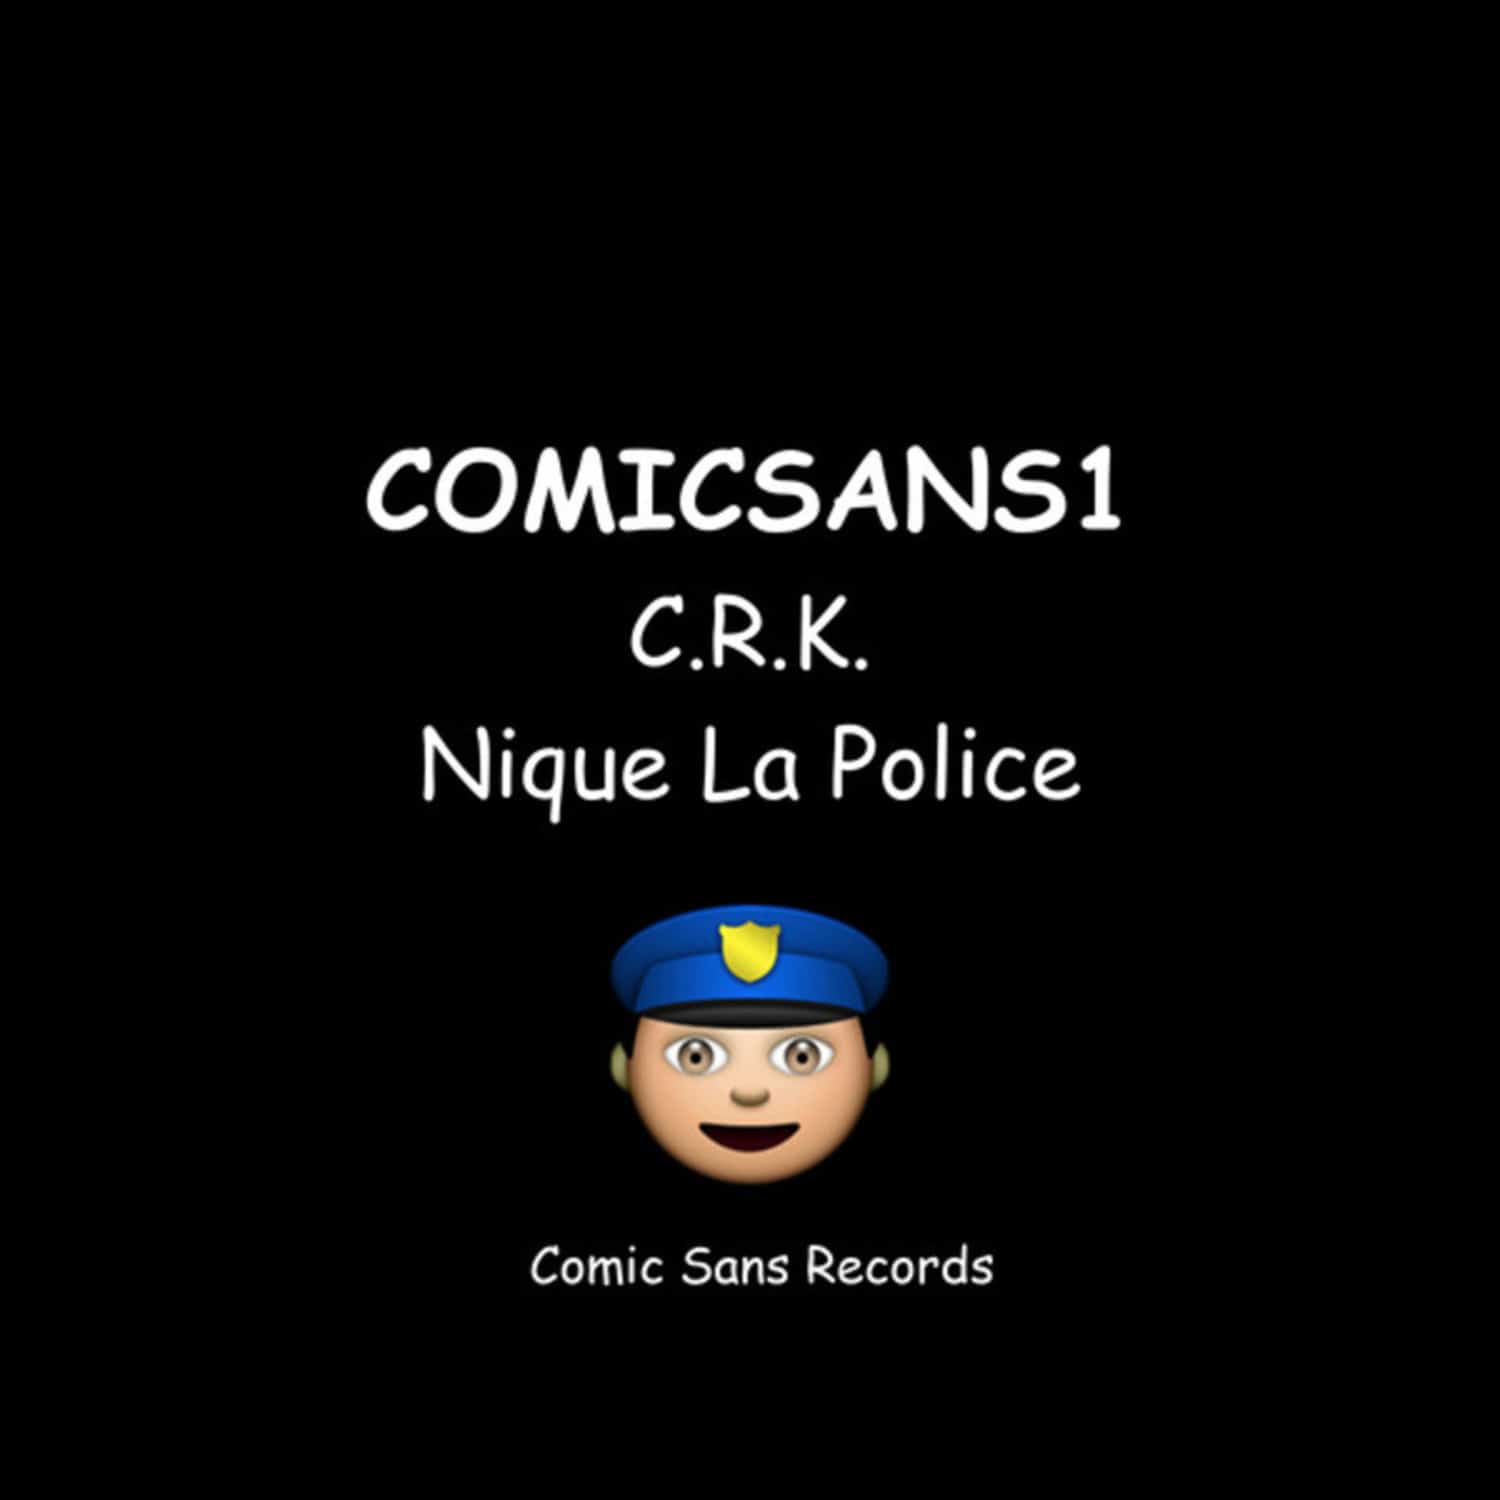 C.R.K. - NIQUE LA POLICE